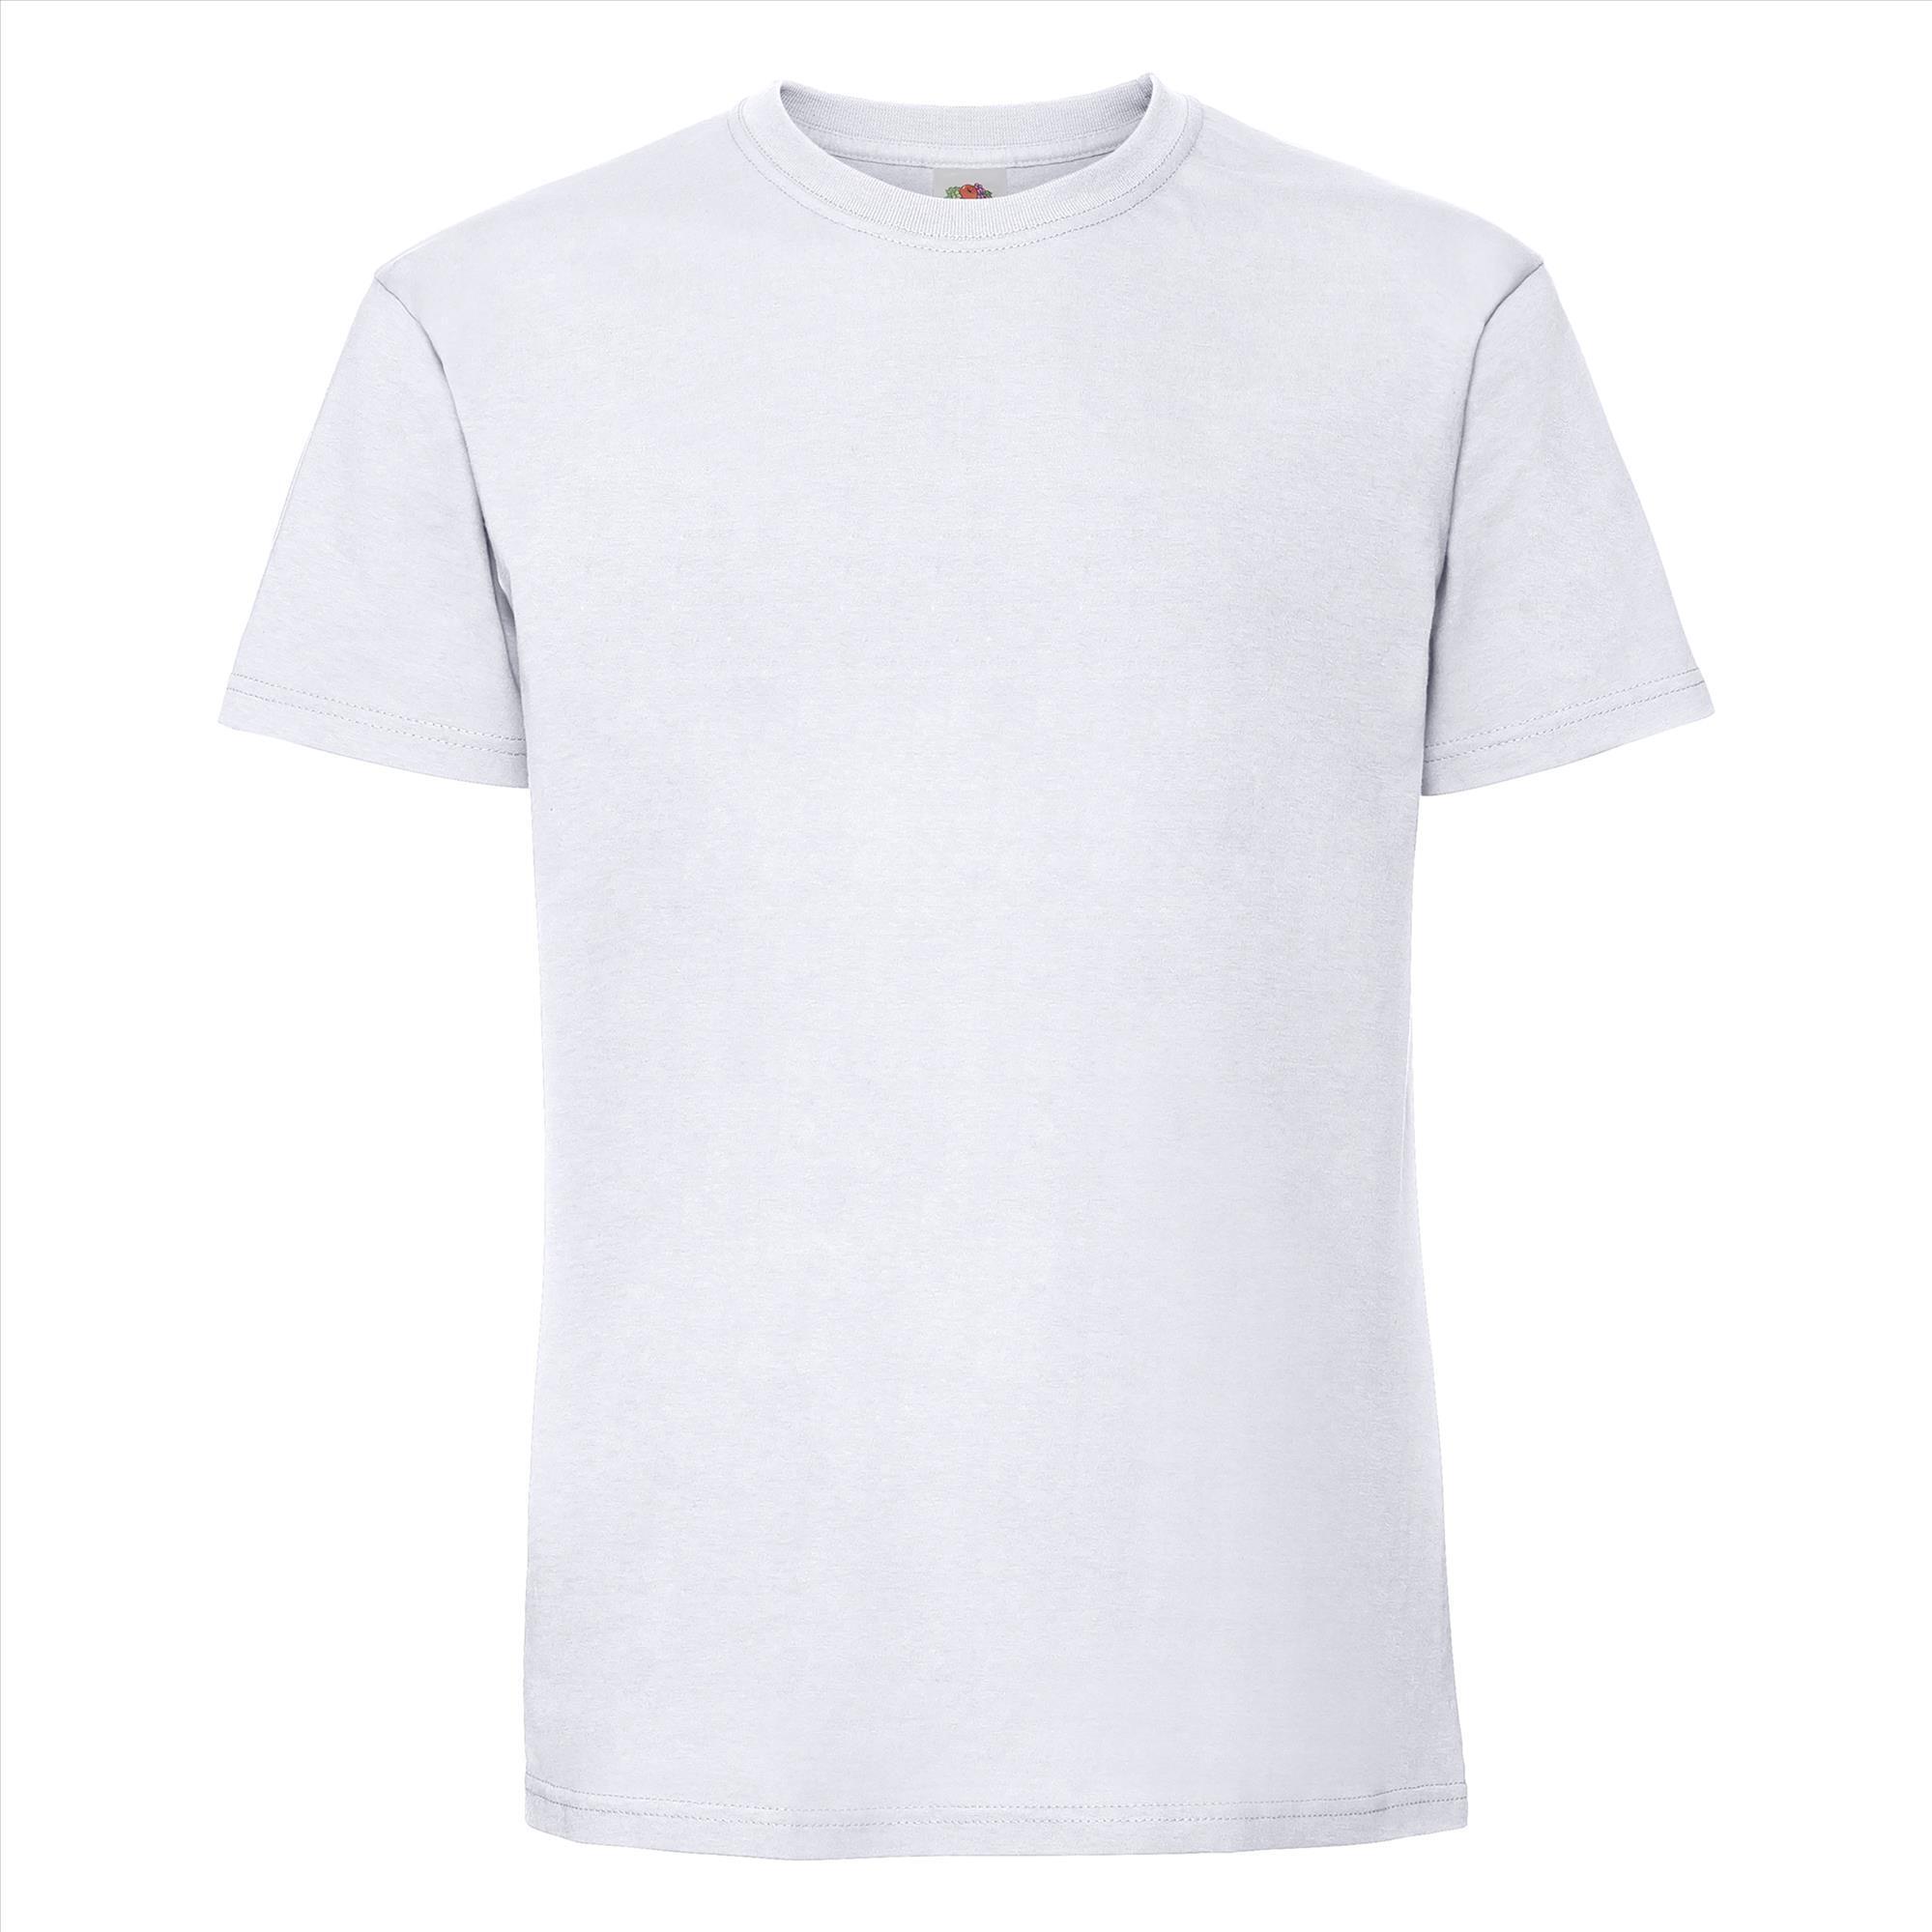 T-shirt wit korte mouwen voor mannen bedrukbaar te personaliseren